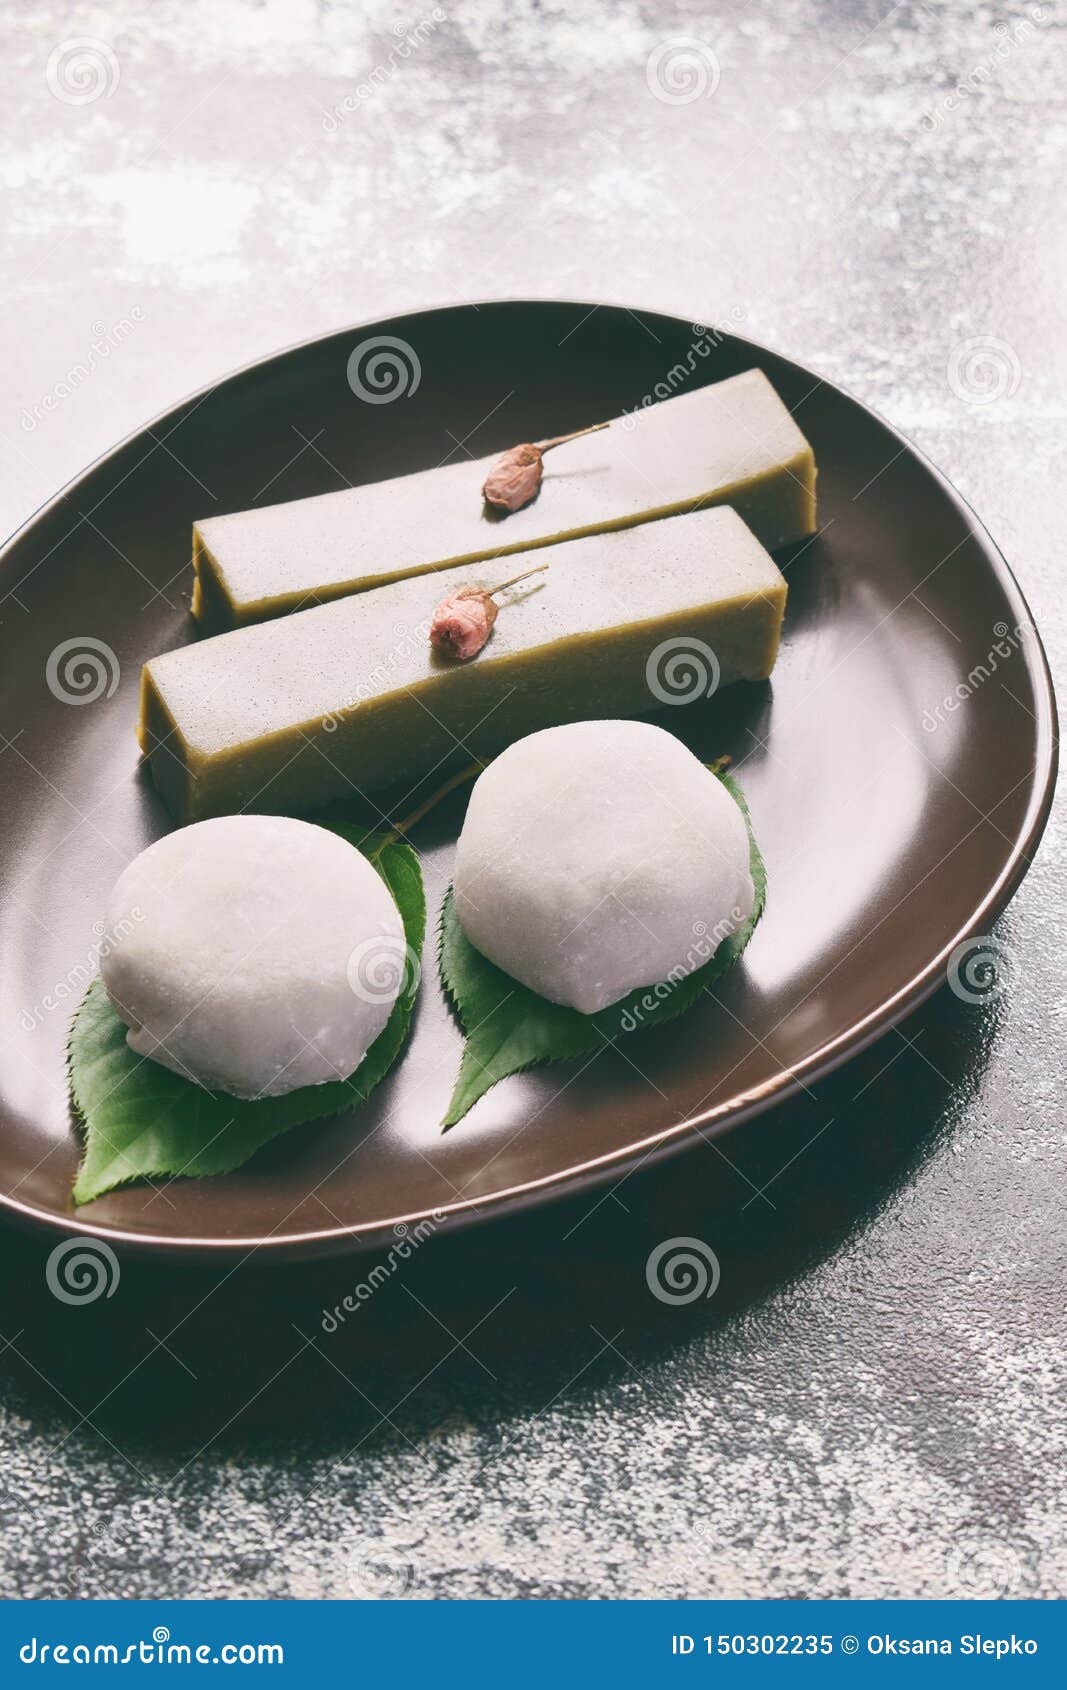 Le mochi, le dessert traditionnel japonais